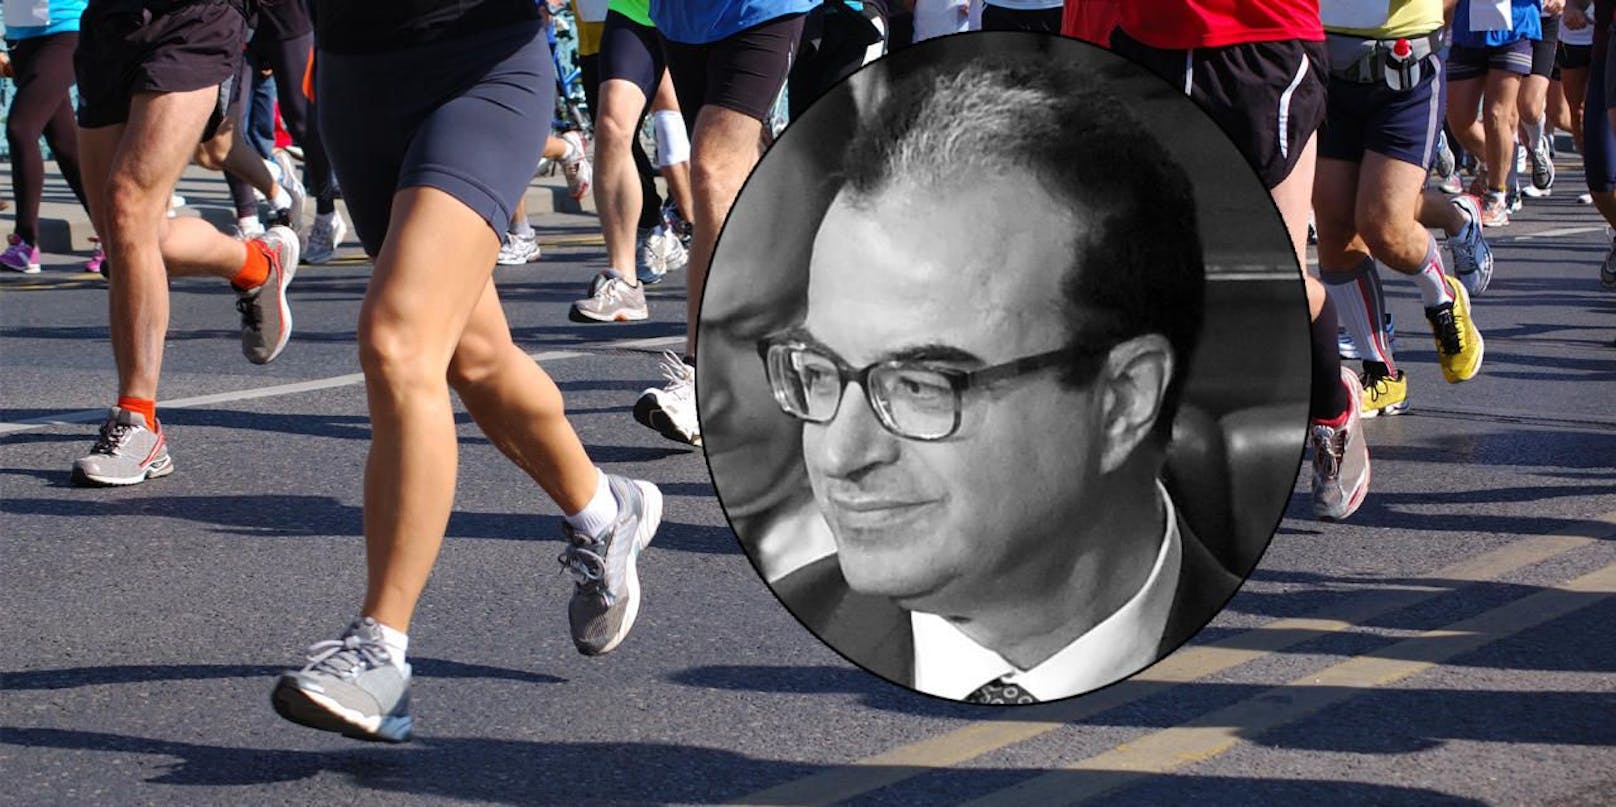 Gesundheitsminister stirbt nach 500-Meter-Lauf